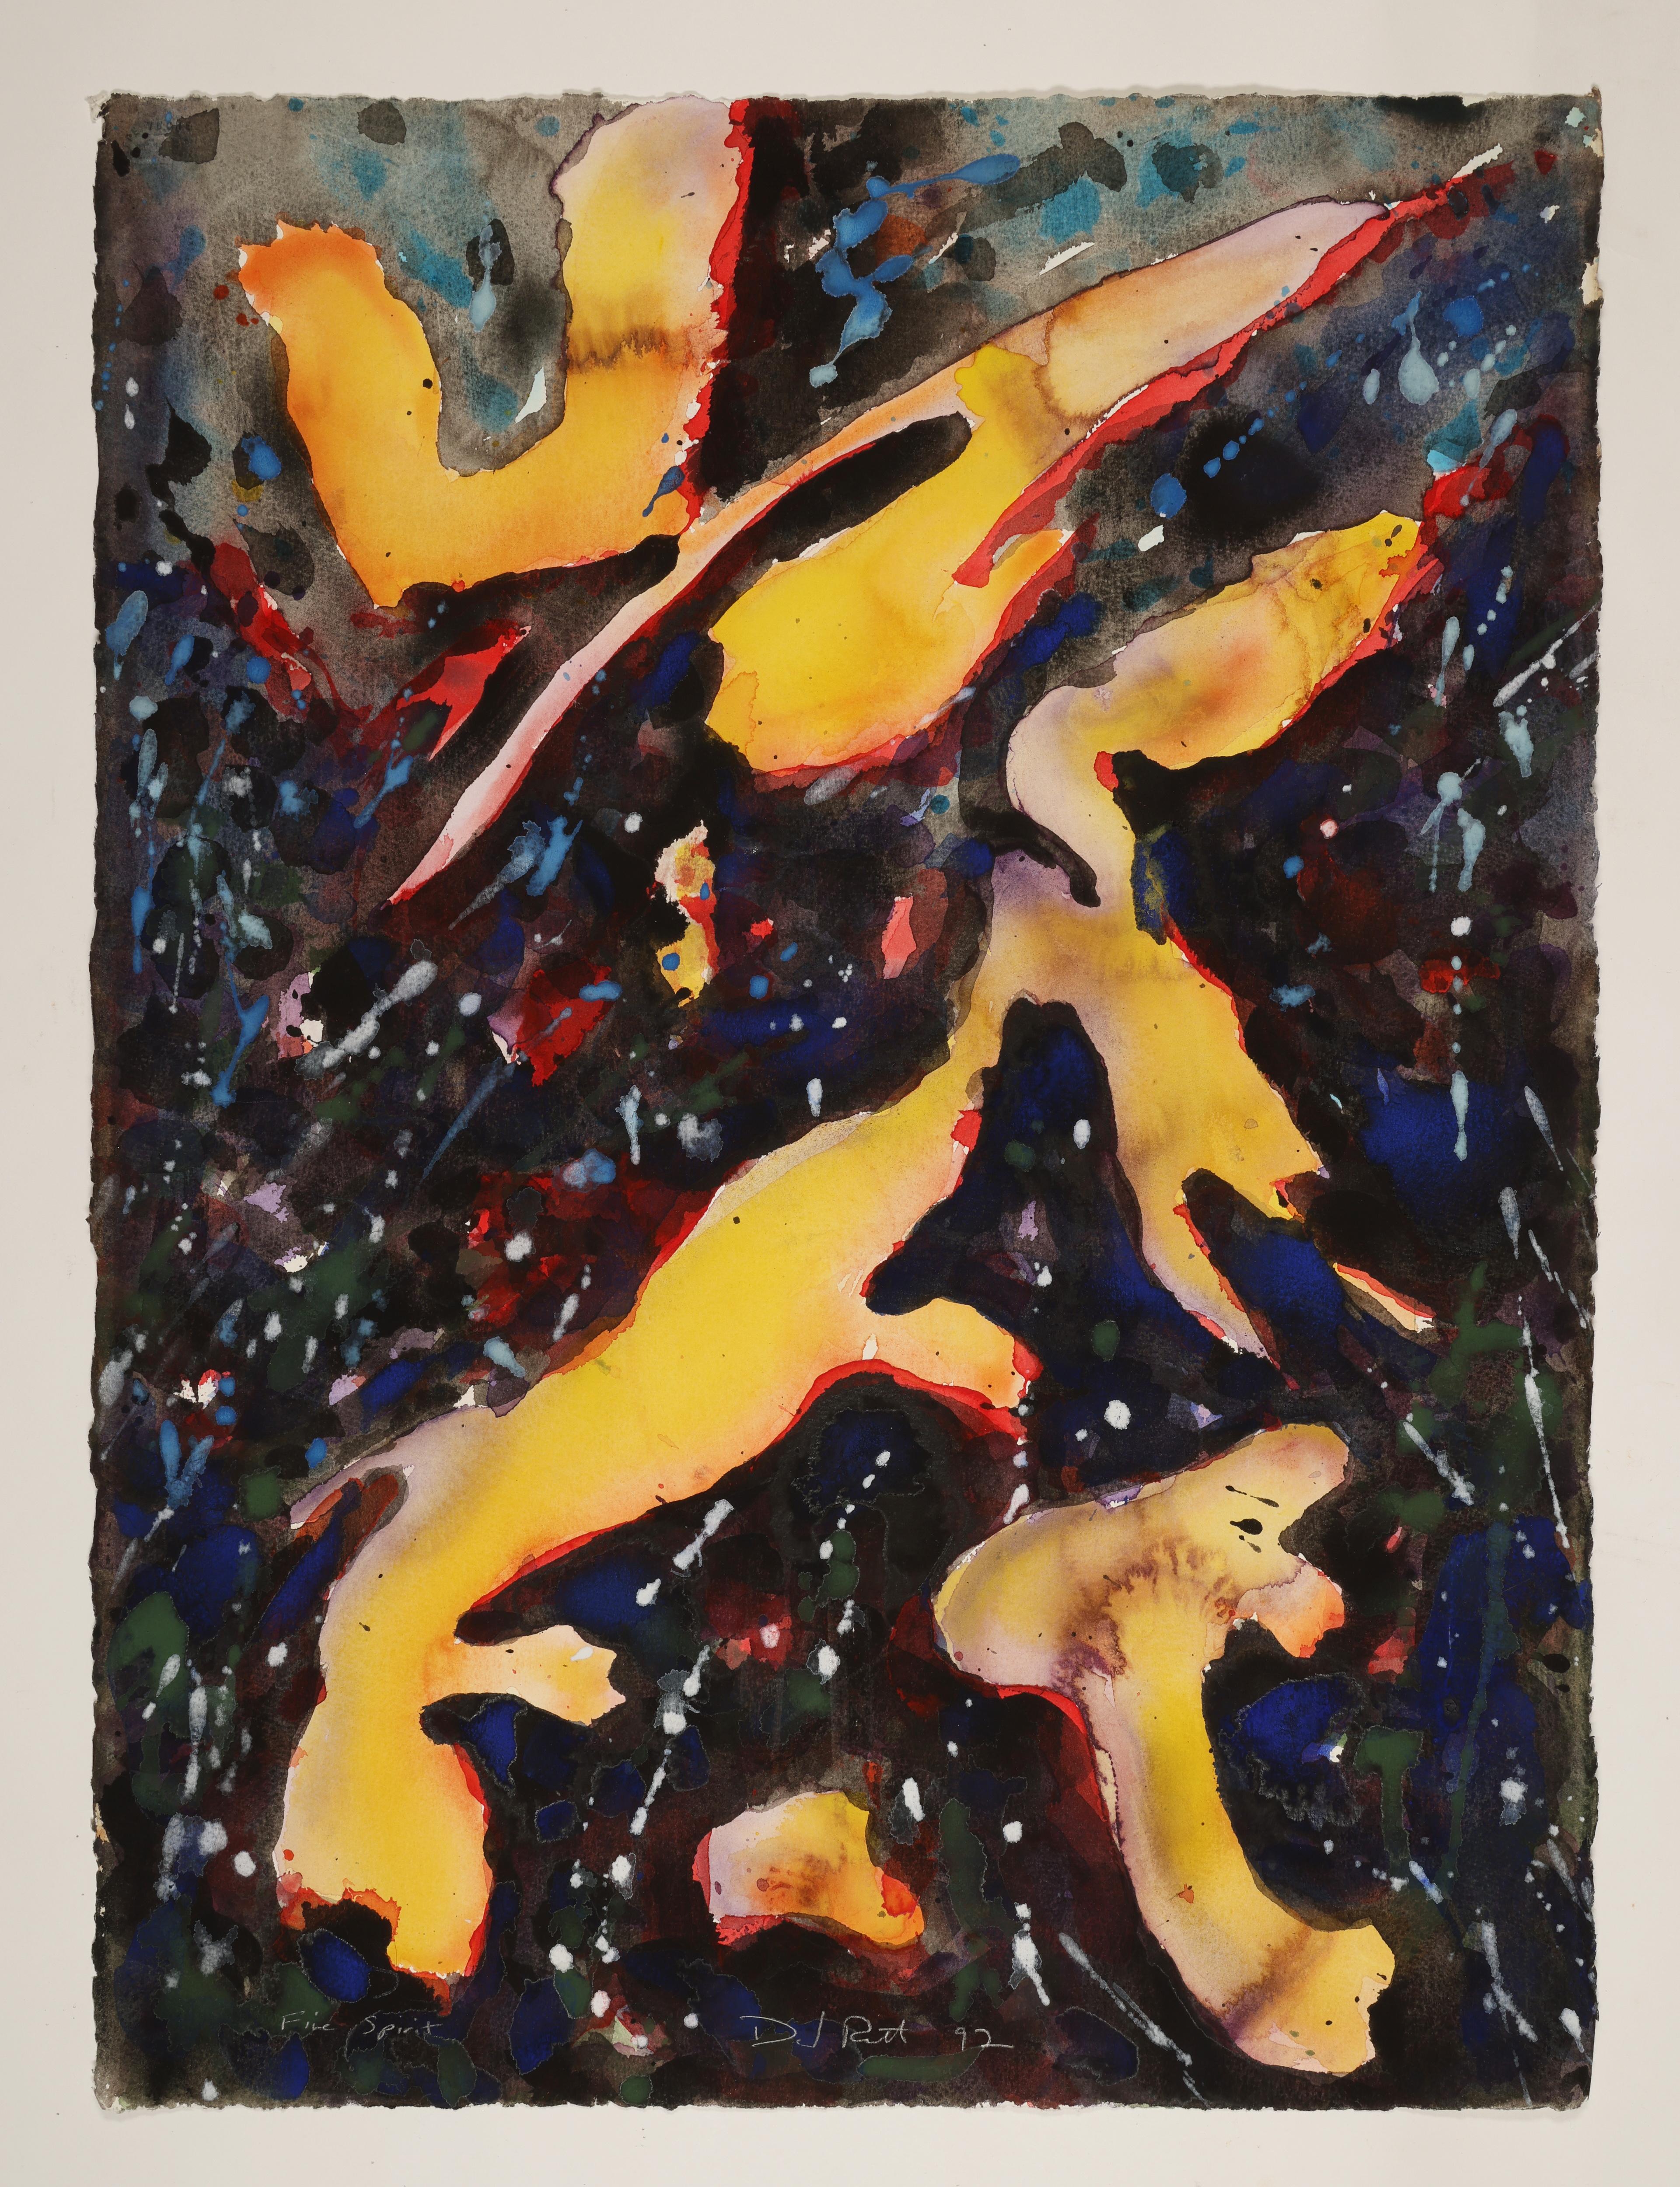 Dies ist ein zeitgenössisches abstraktes Aquarell des Künstlers David Ruth. Diese Gemäldeserie zeichnet sich oft durch leuchtende Farben und lebendige Layouts aus, die den Betrachter in ihren Bann ziehen. Sie sollen ihm helfen, seine Arbeit zu